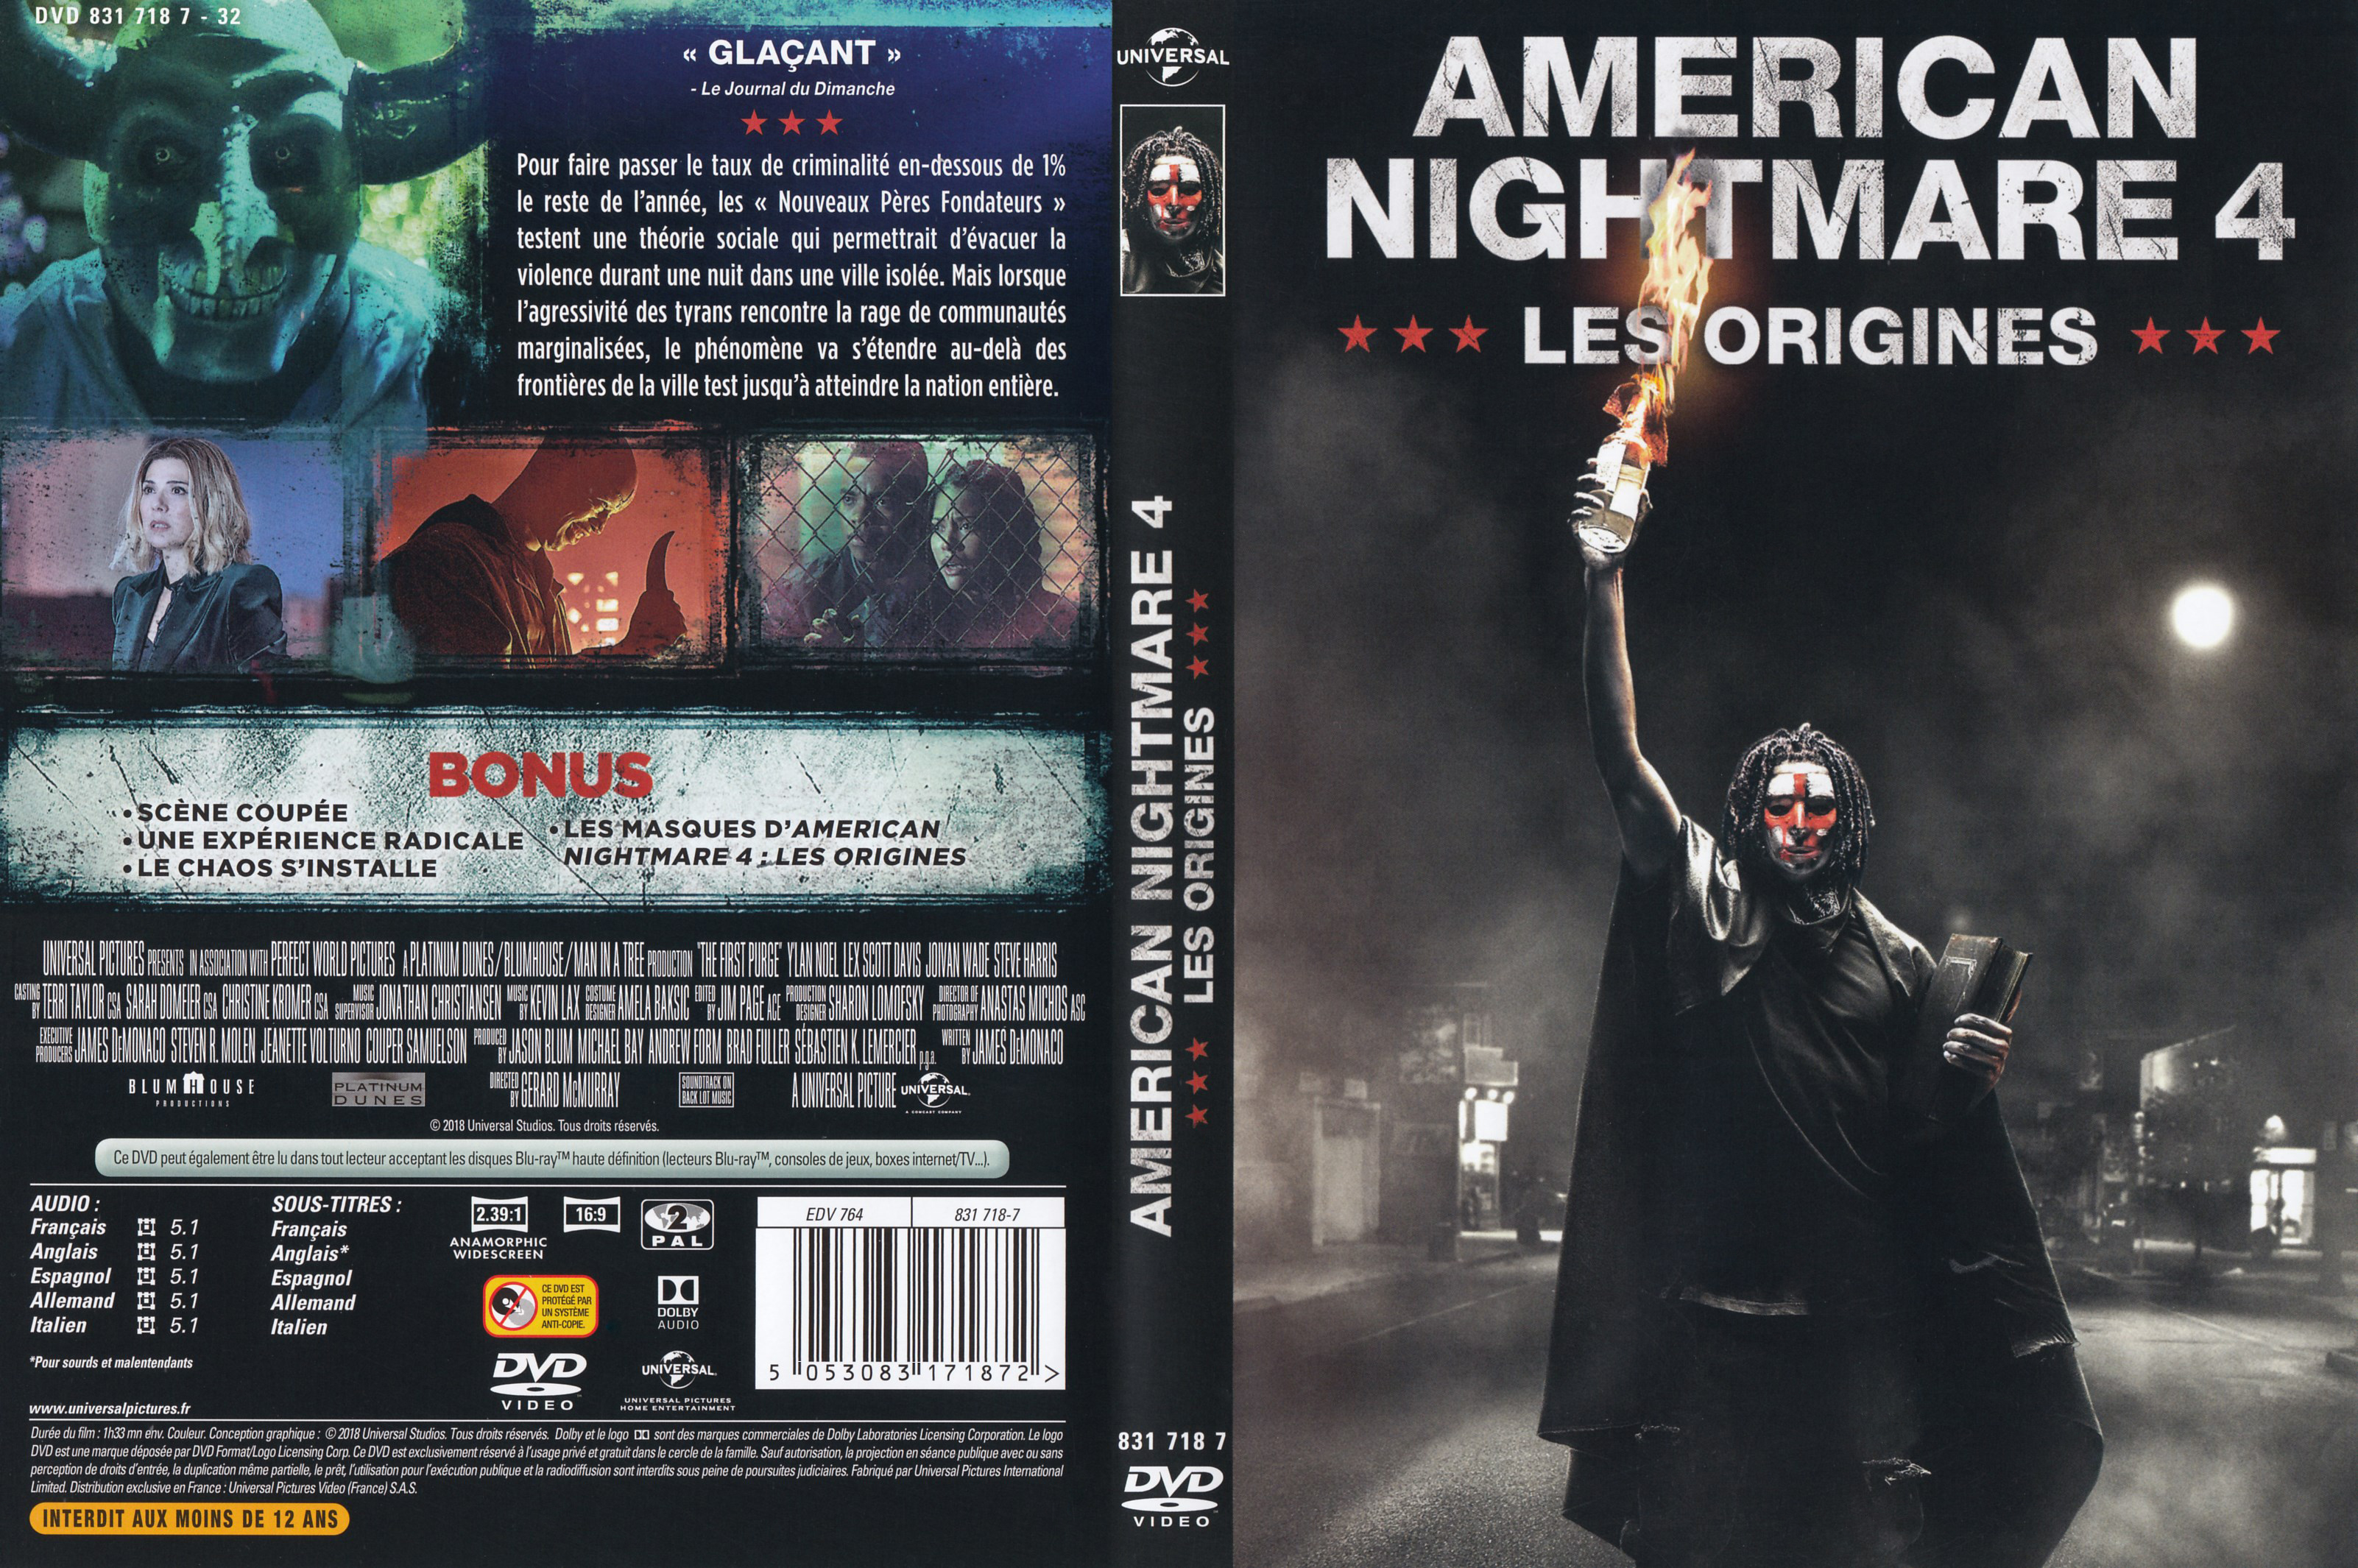 Jaquette DVD American nightmare 4 les origines